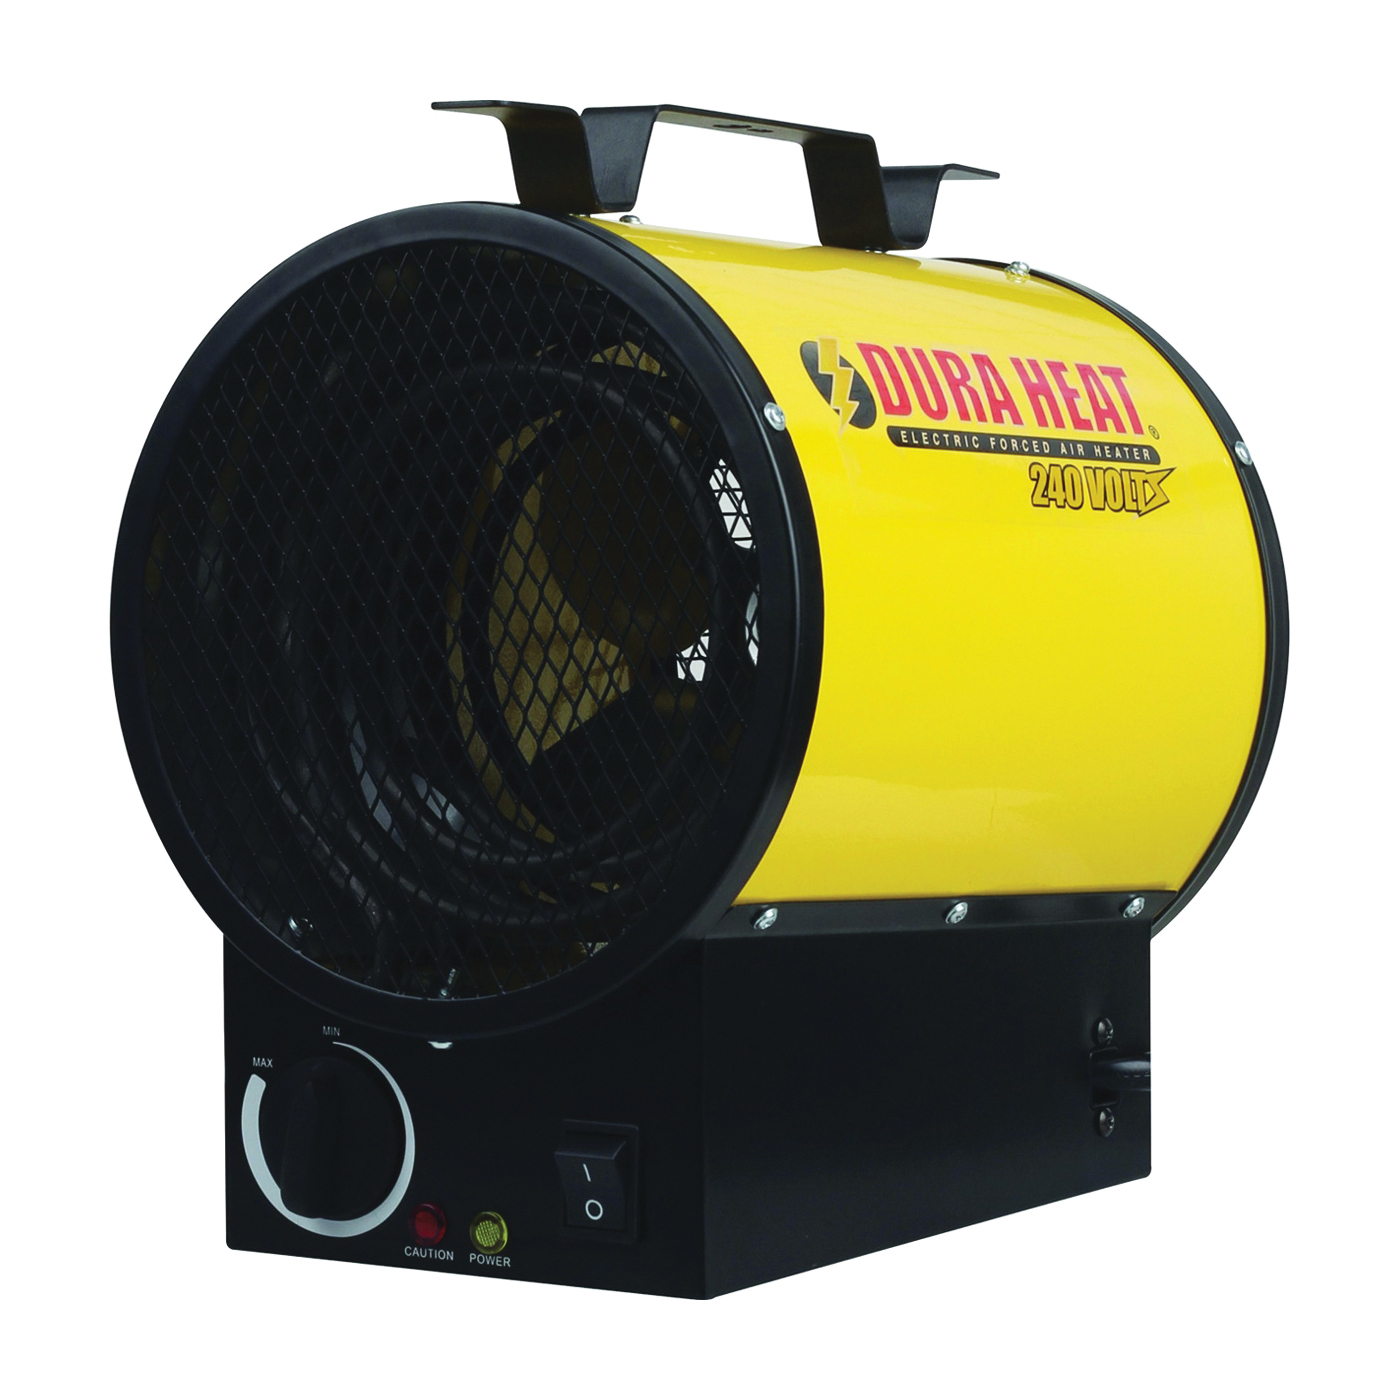 EUH4000 Air Heater, 20 A, 240 V, 3750 W, 12,800 Btu Heating, Yellow